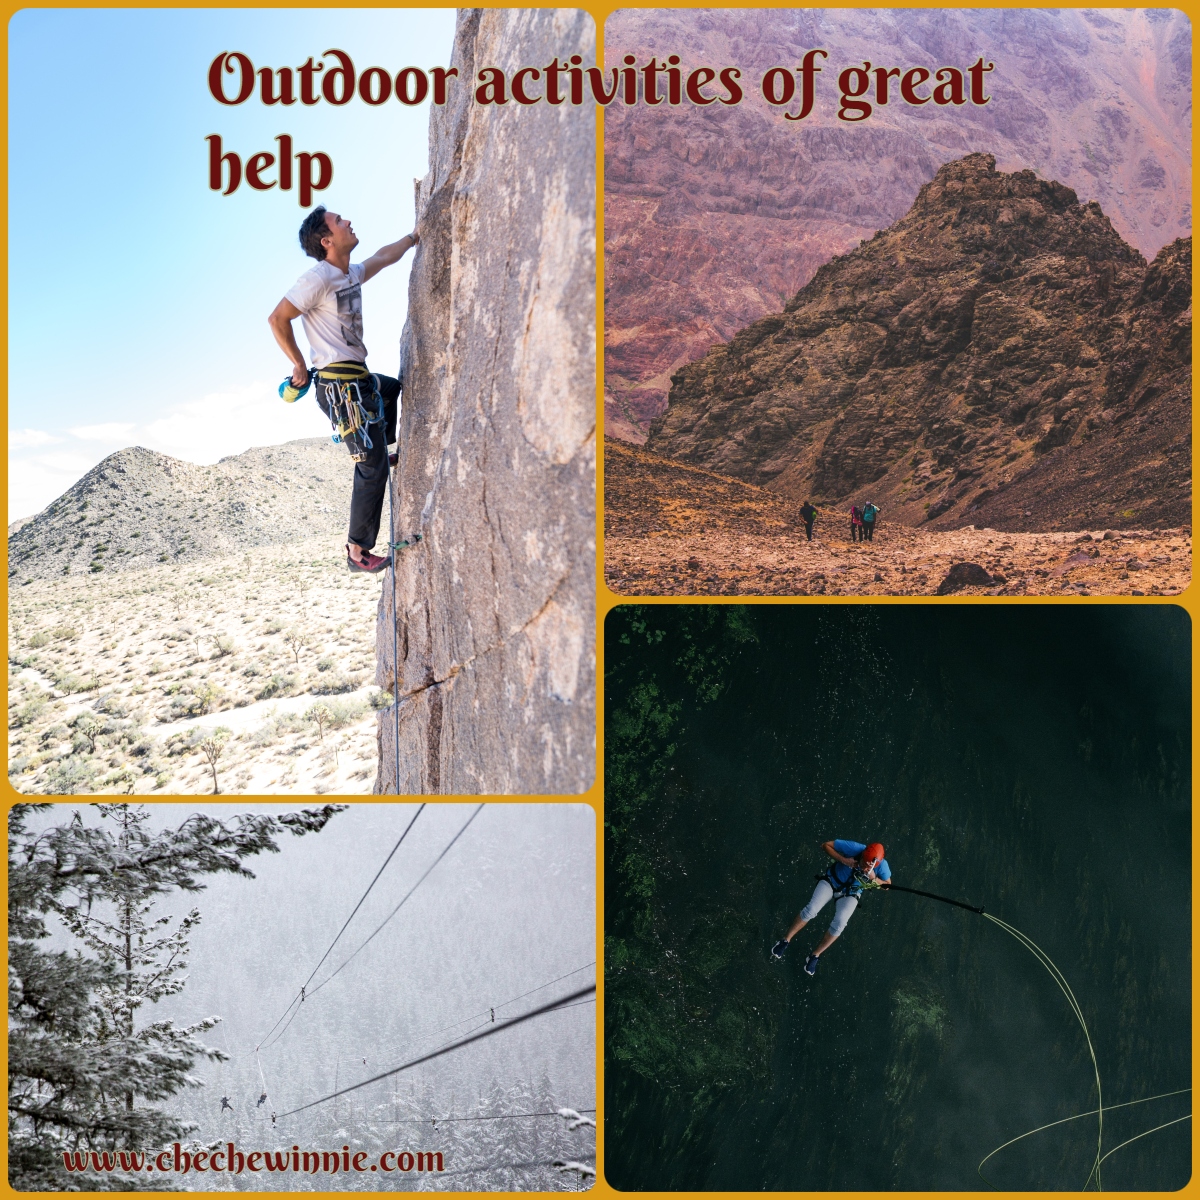 Outdoor activities of great help